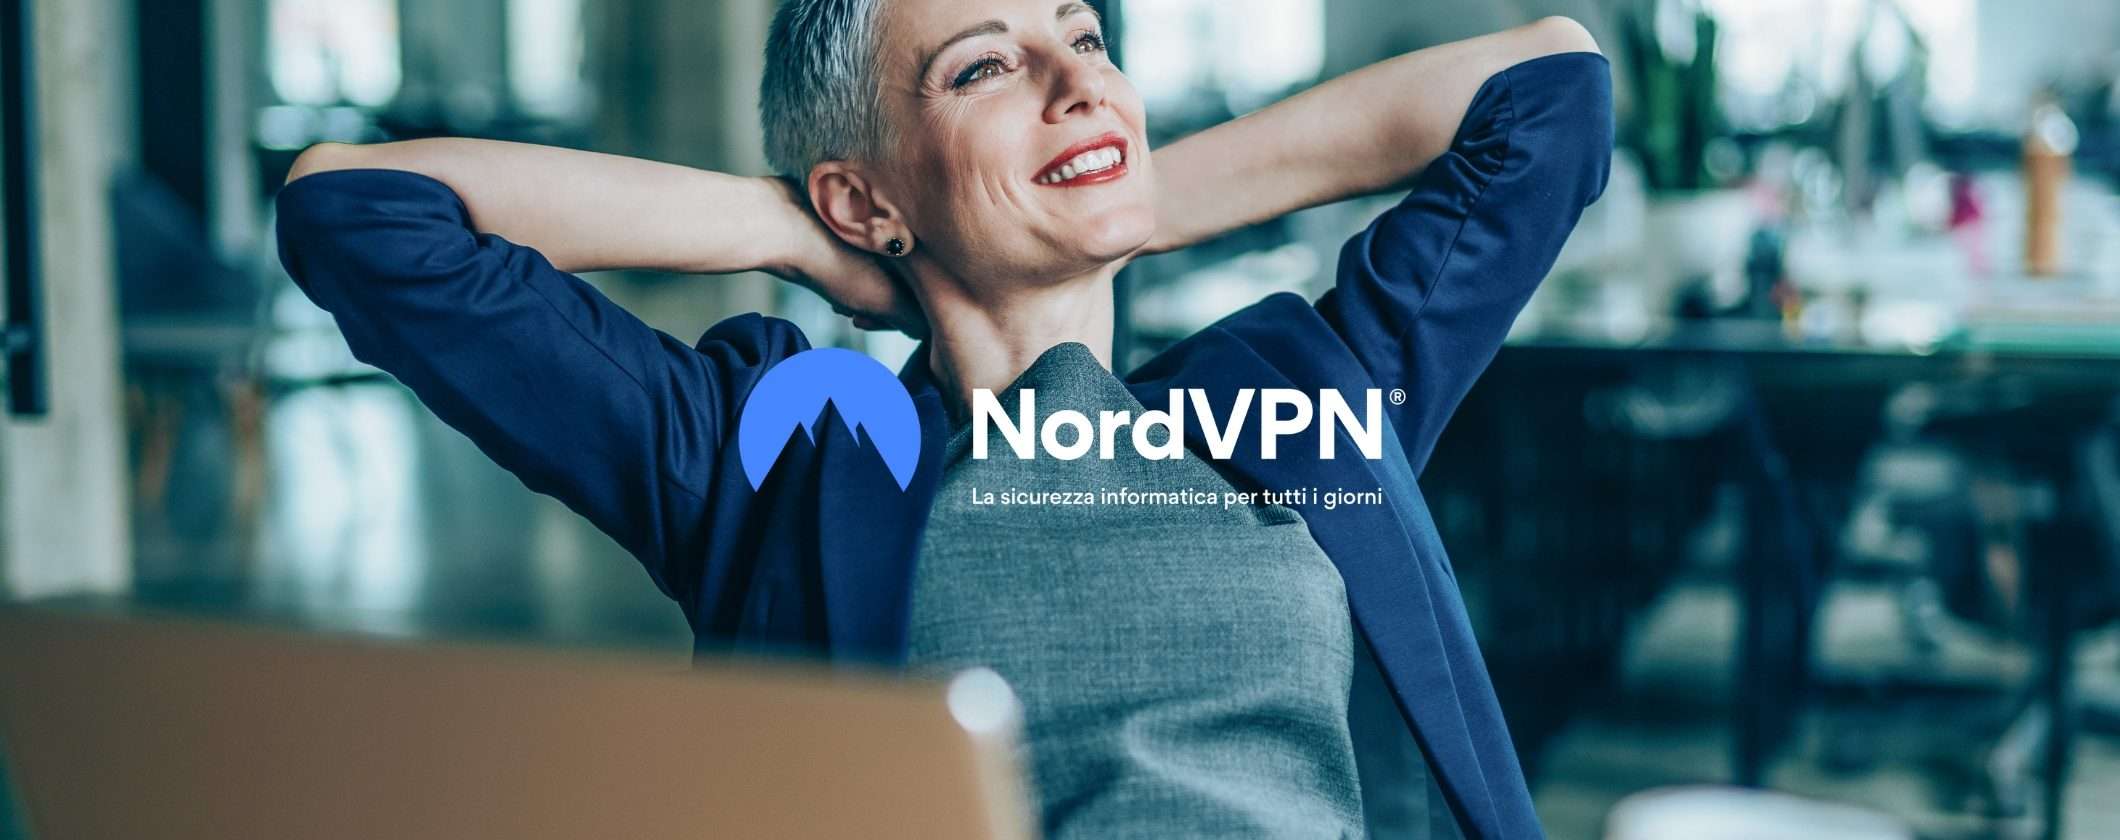 Prova NordVPN per 30 giorni: soddisfatti o rimborsati